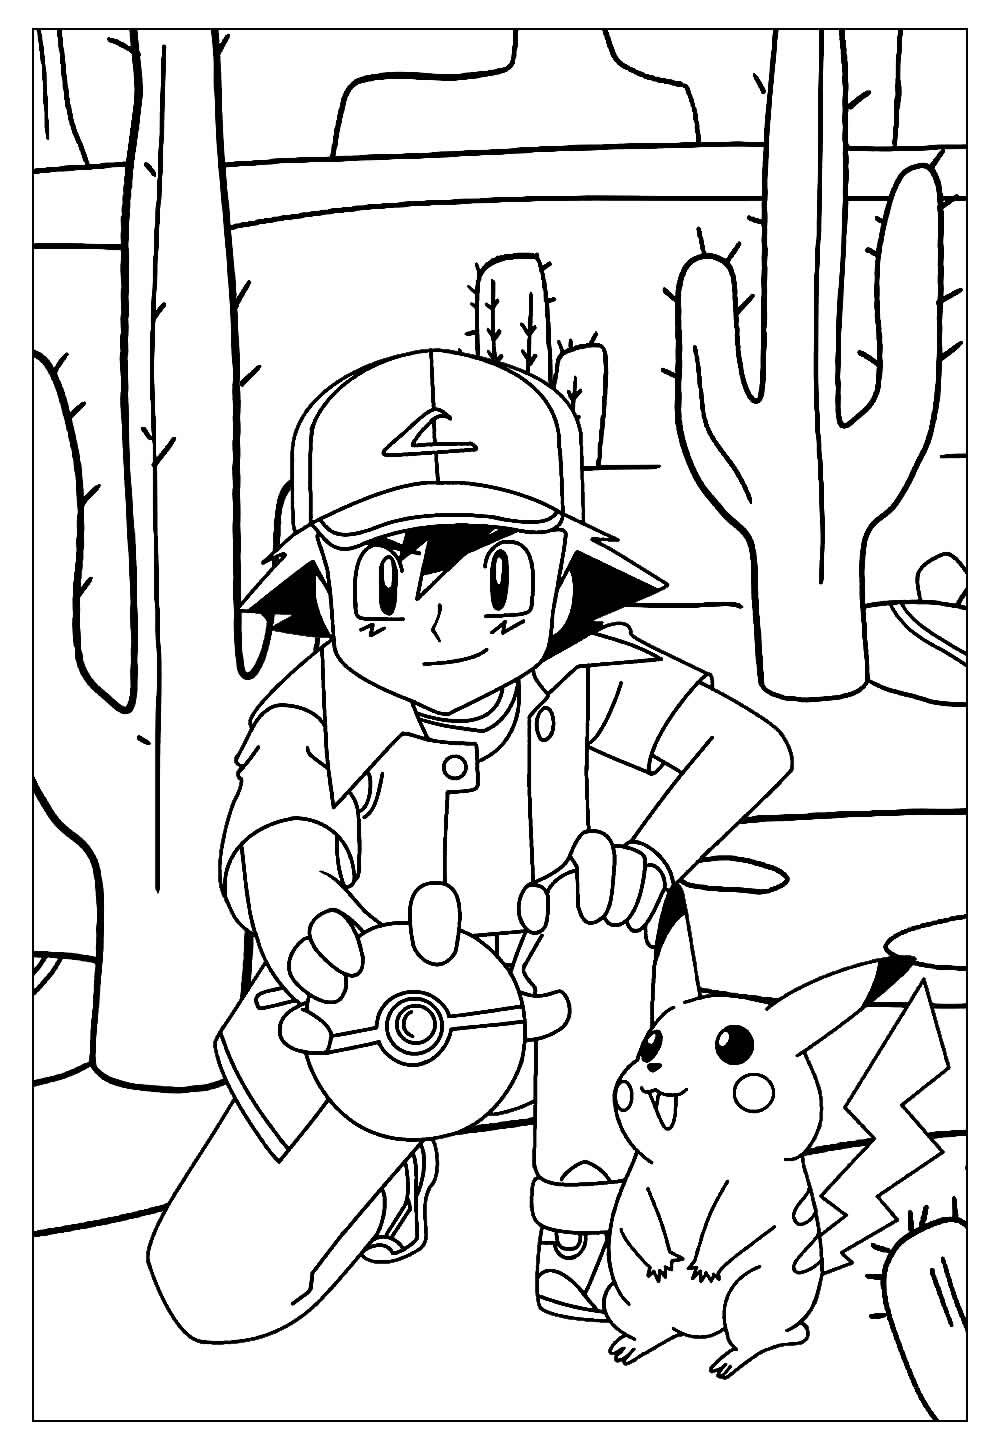 Desenhos para colorir do Pokemon - Ash e Pikachu - Escola Educação